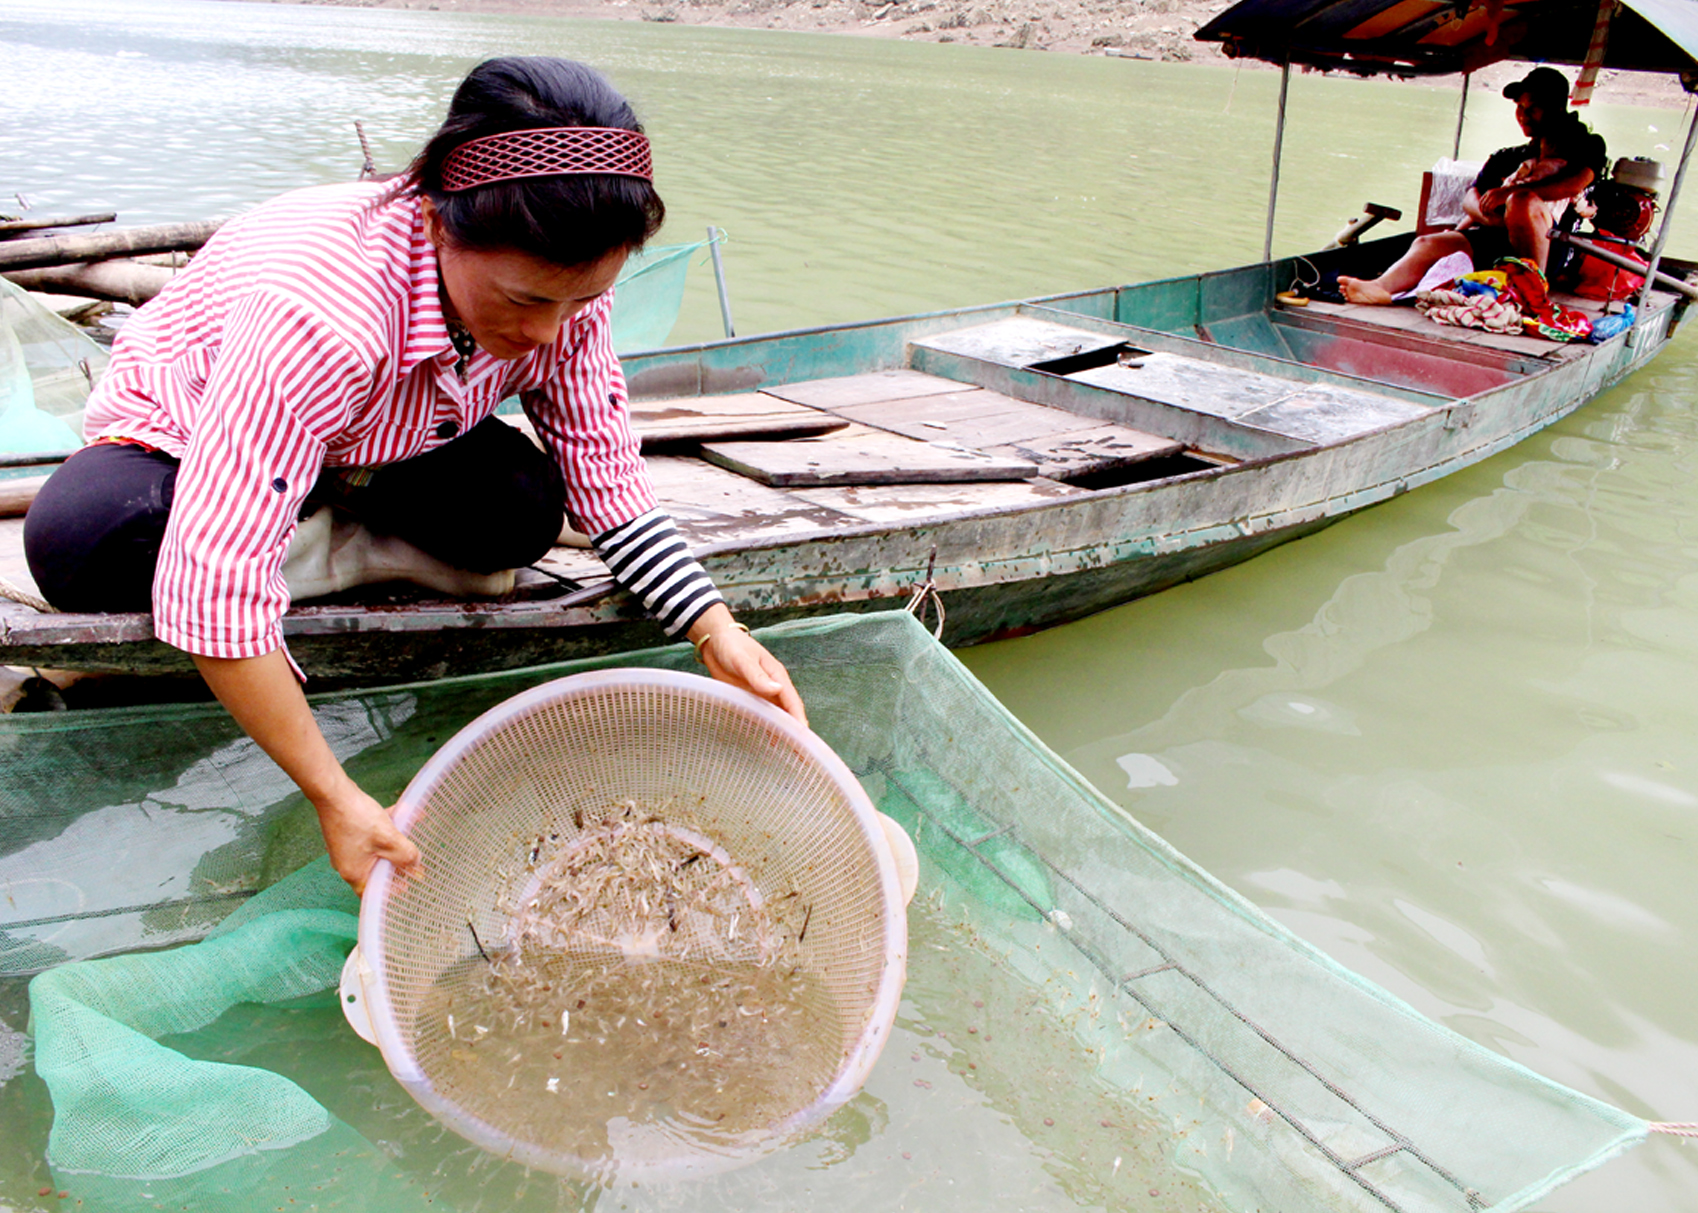 Những mẻ tôm làm phong phú thêm bữa ăn và tạo nguồn thu nhập cho người dân dọc bờ sông Gâm.
